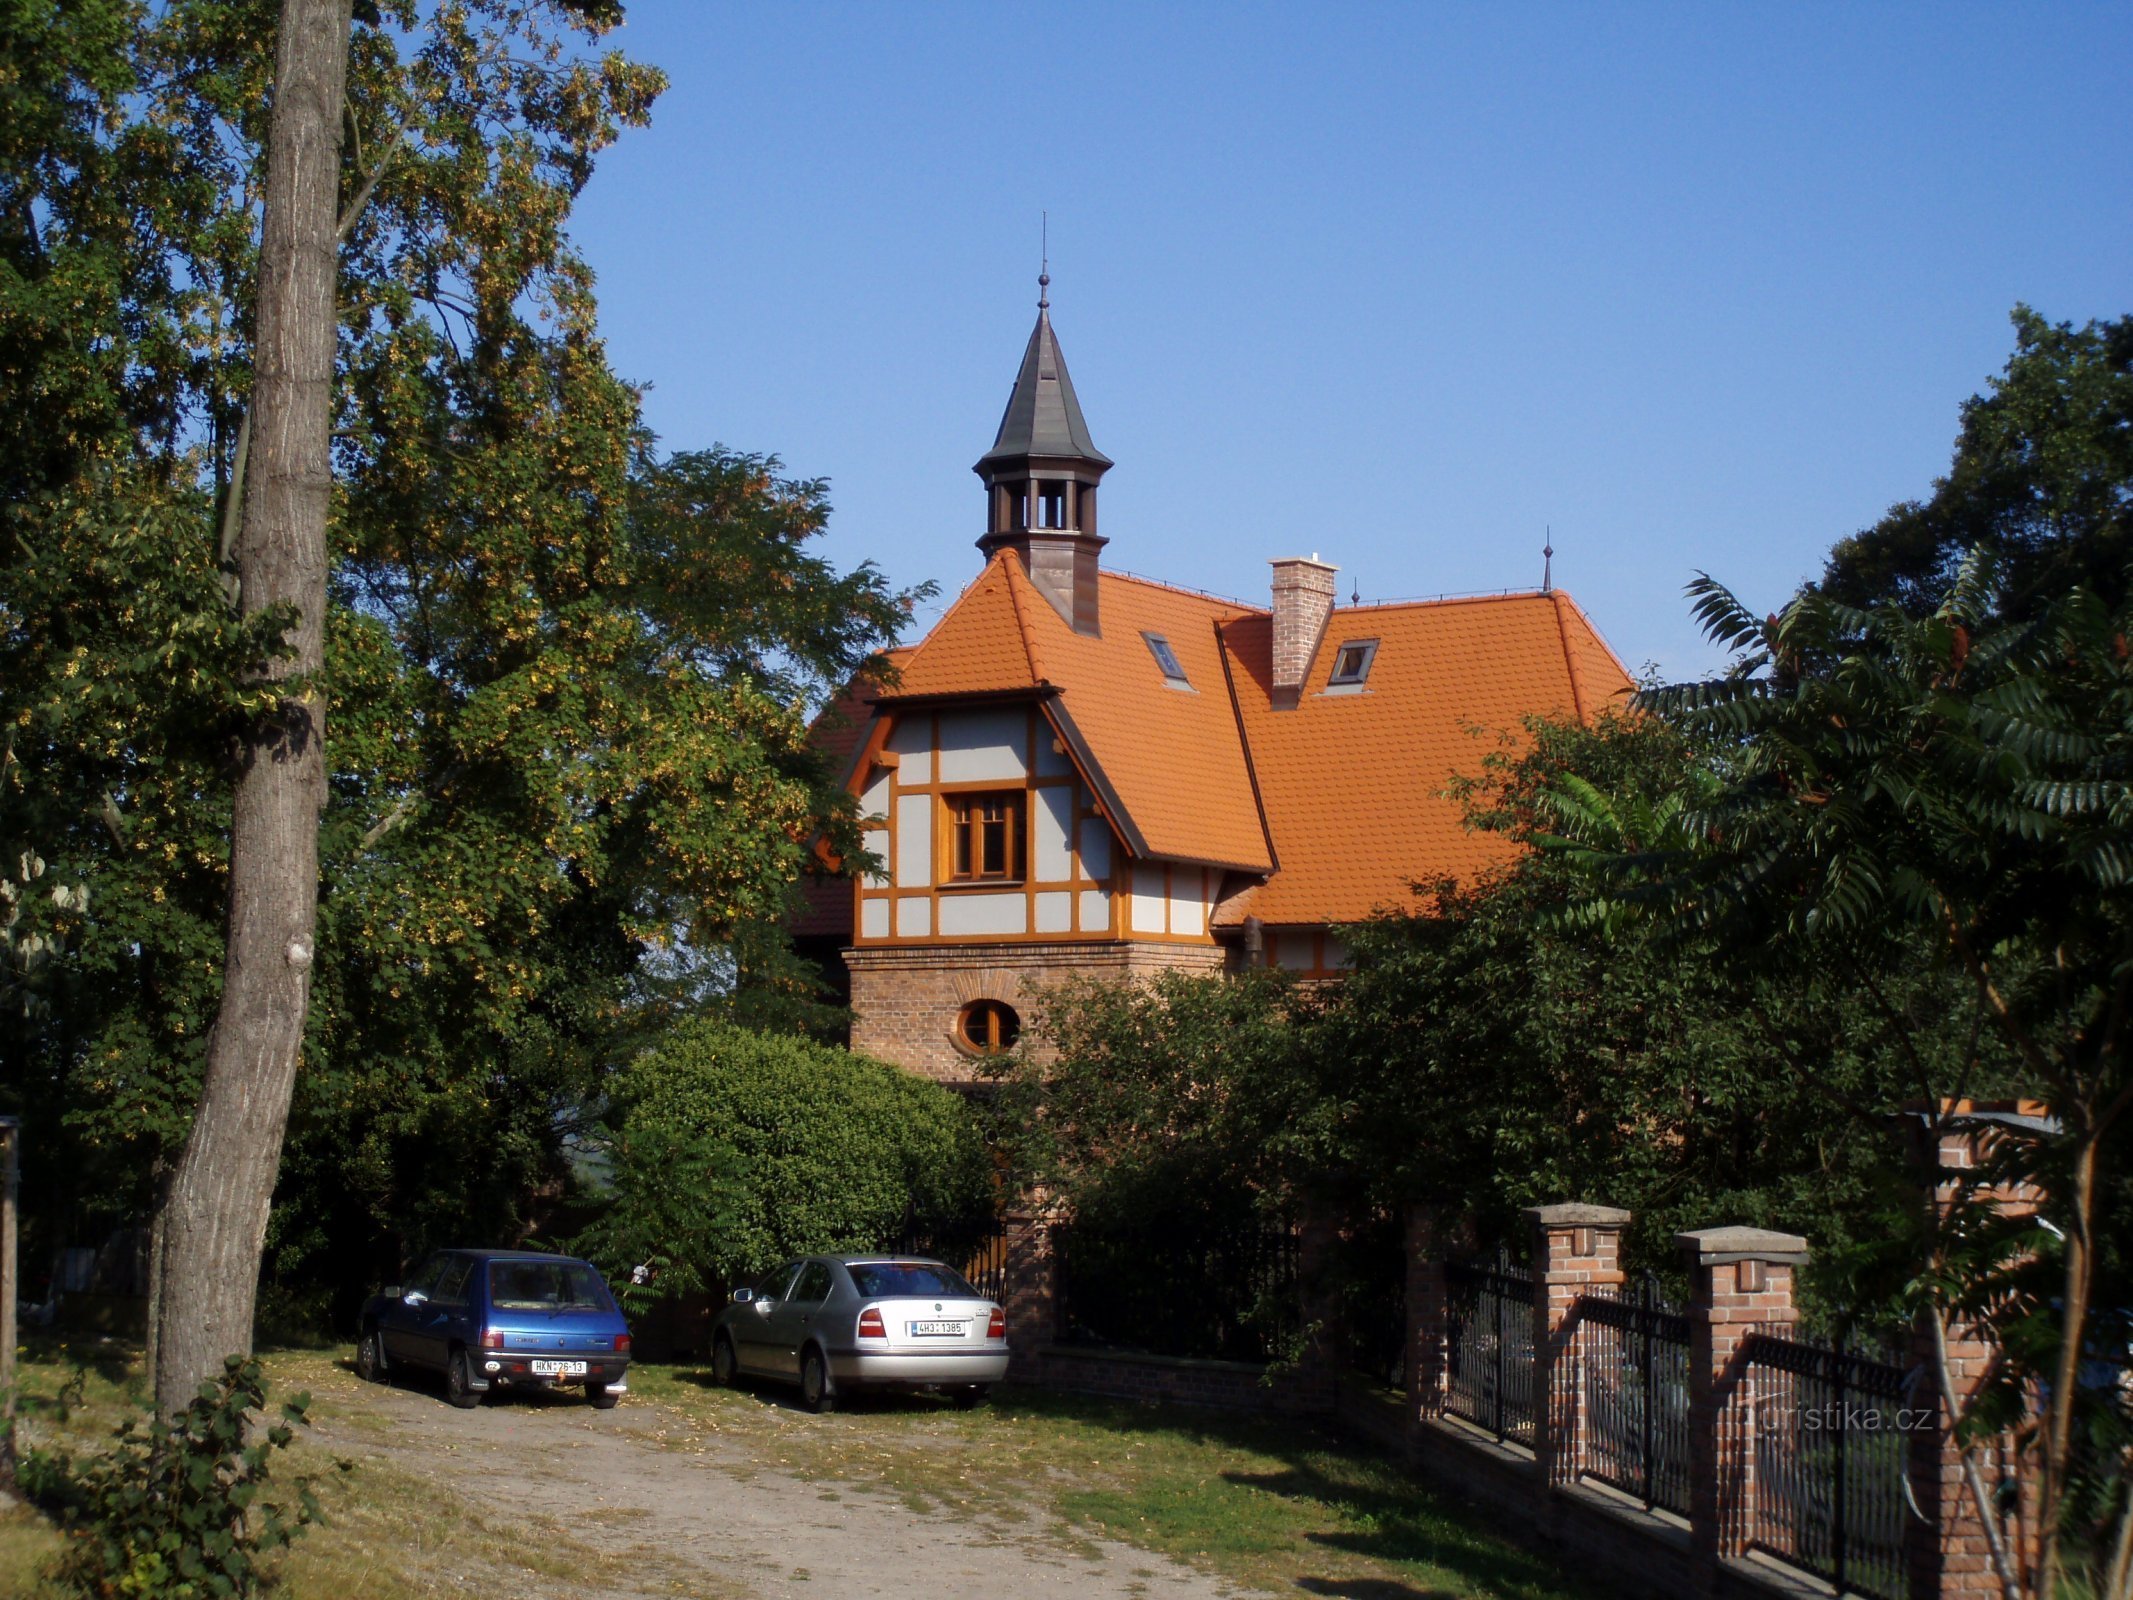 Lâu đài số 440 (Hradec Králové, 28.8.2009/XNUMX/XNUMX)